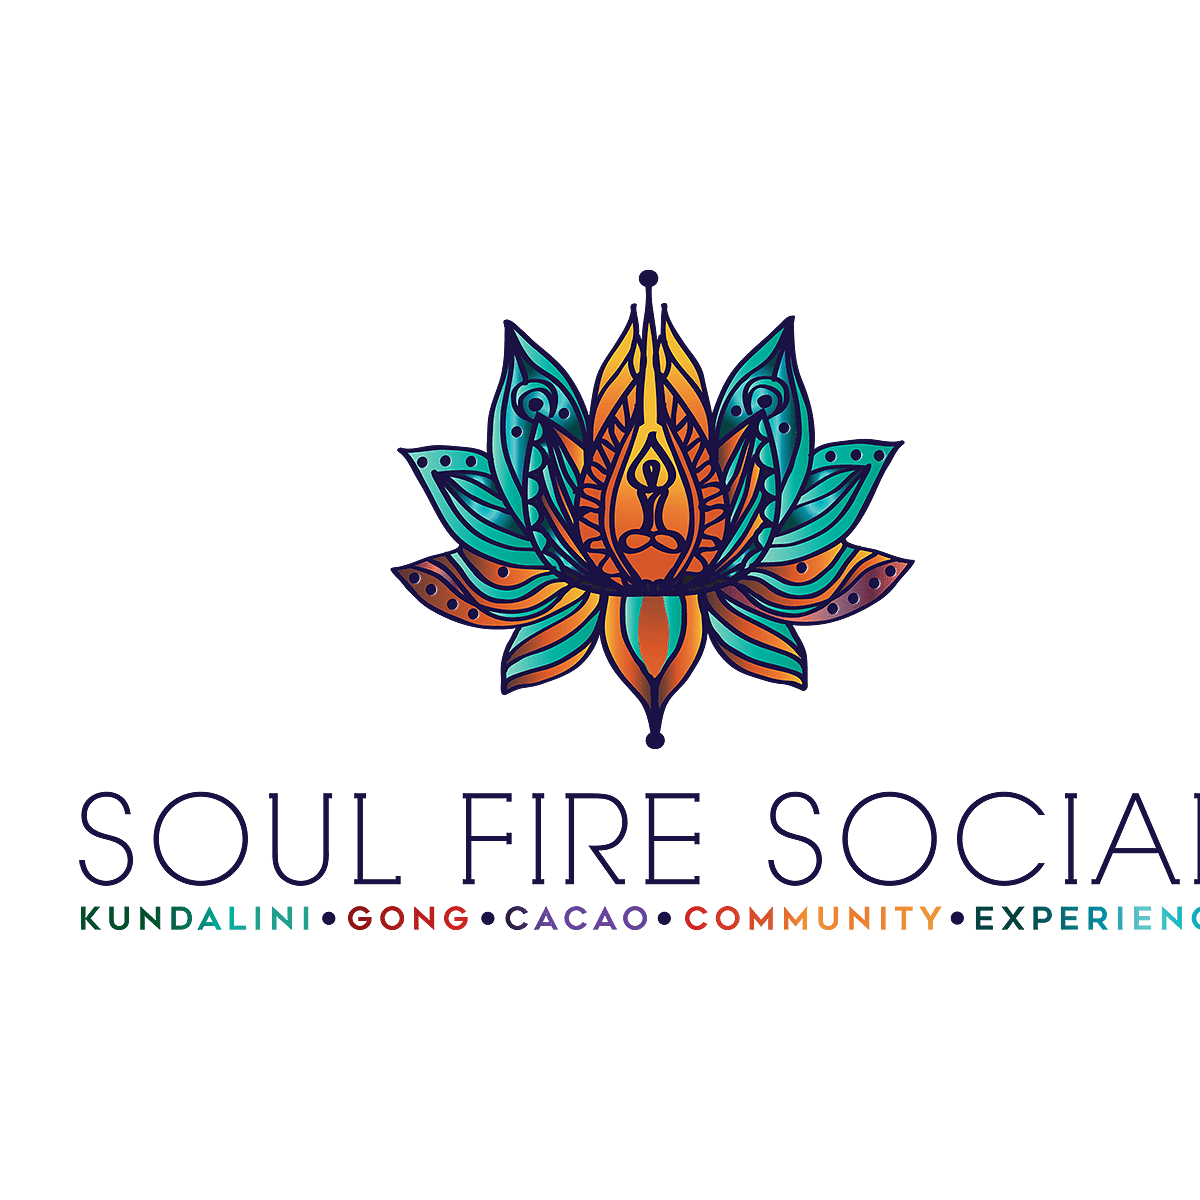 Join the Soul Fire Social Newsletter - Soul Fire Social, LLC